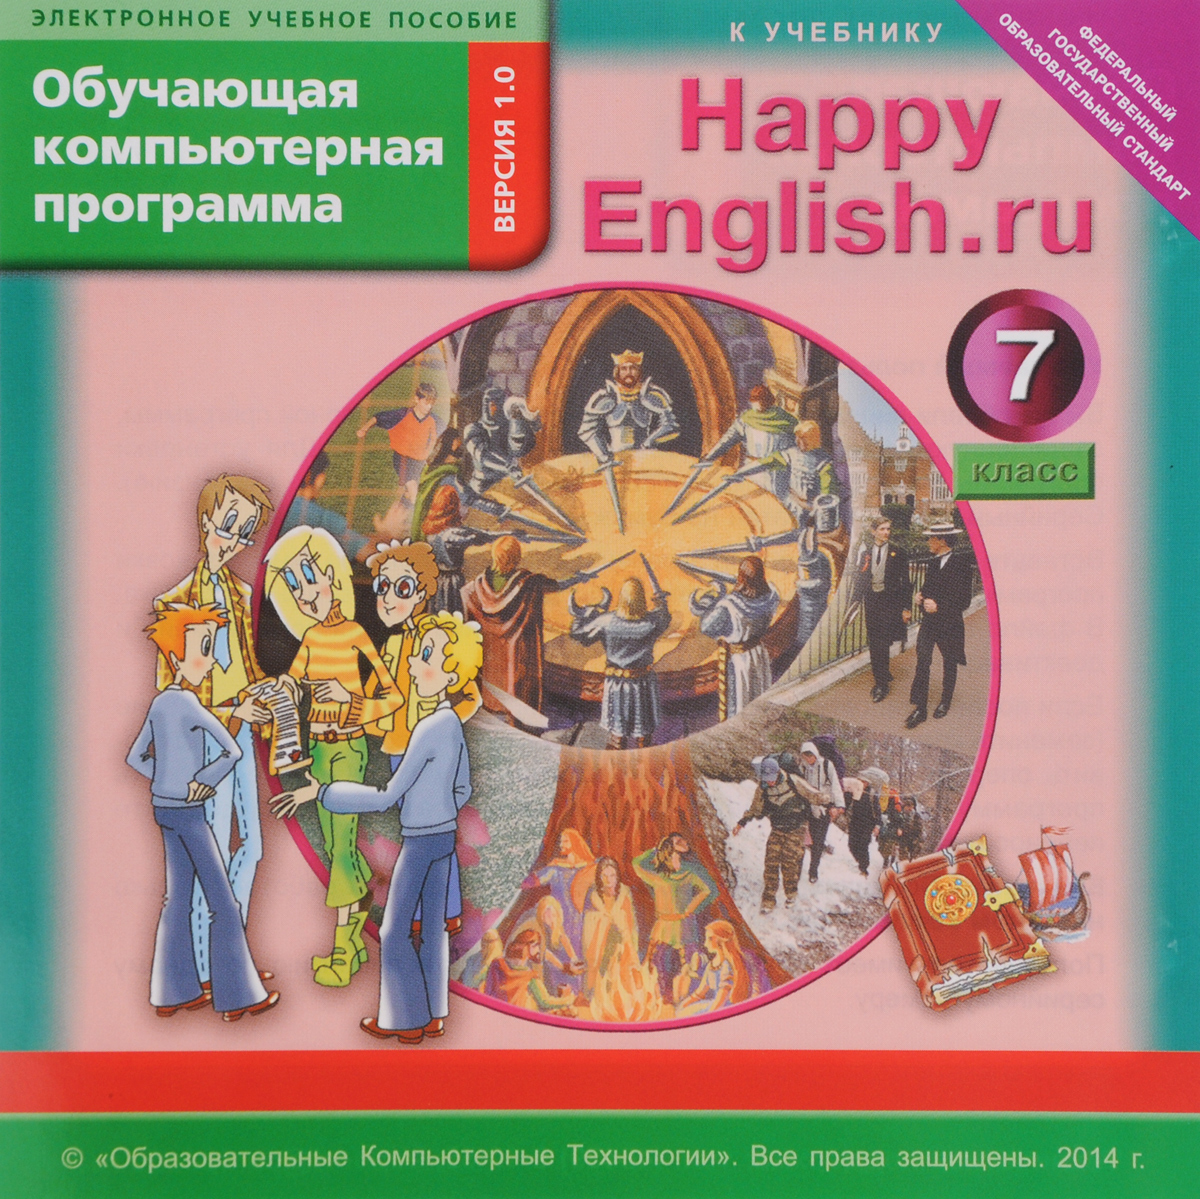 Happy English.ru 7 / Счастливый английский.ру. 7 класс. Обучающая компьютерная программа